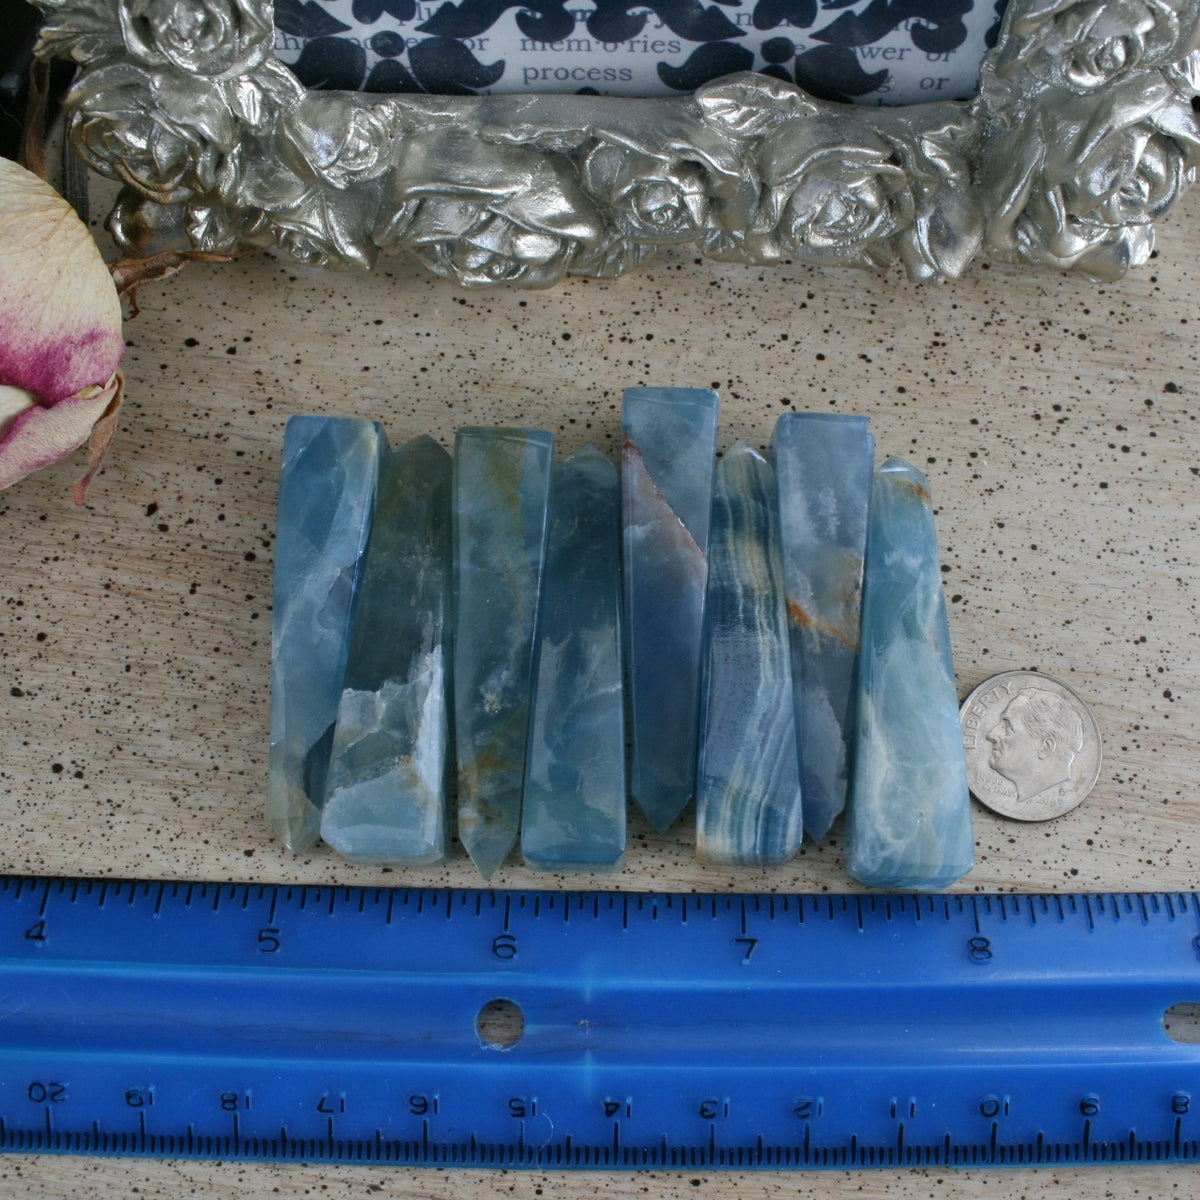 Blue Calcite / Blue Onyx Obelisk from Argentina, also called Lemurian Aquatine Calcite, OB2